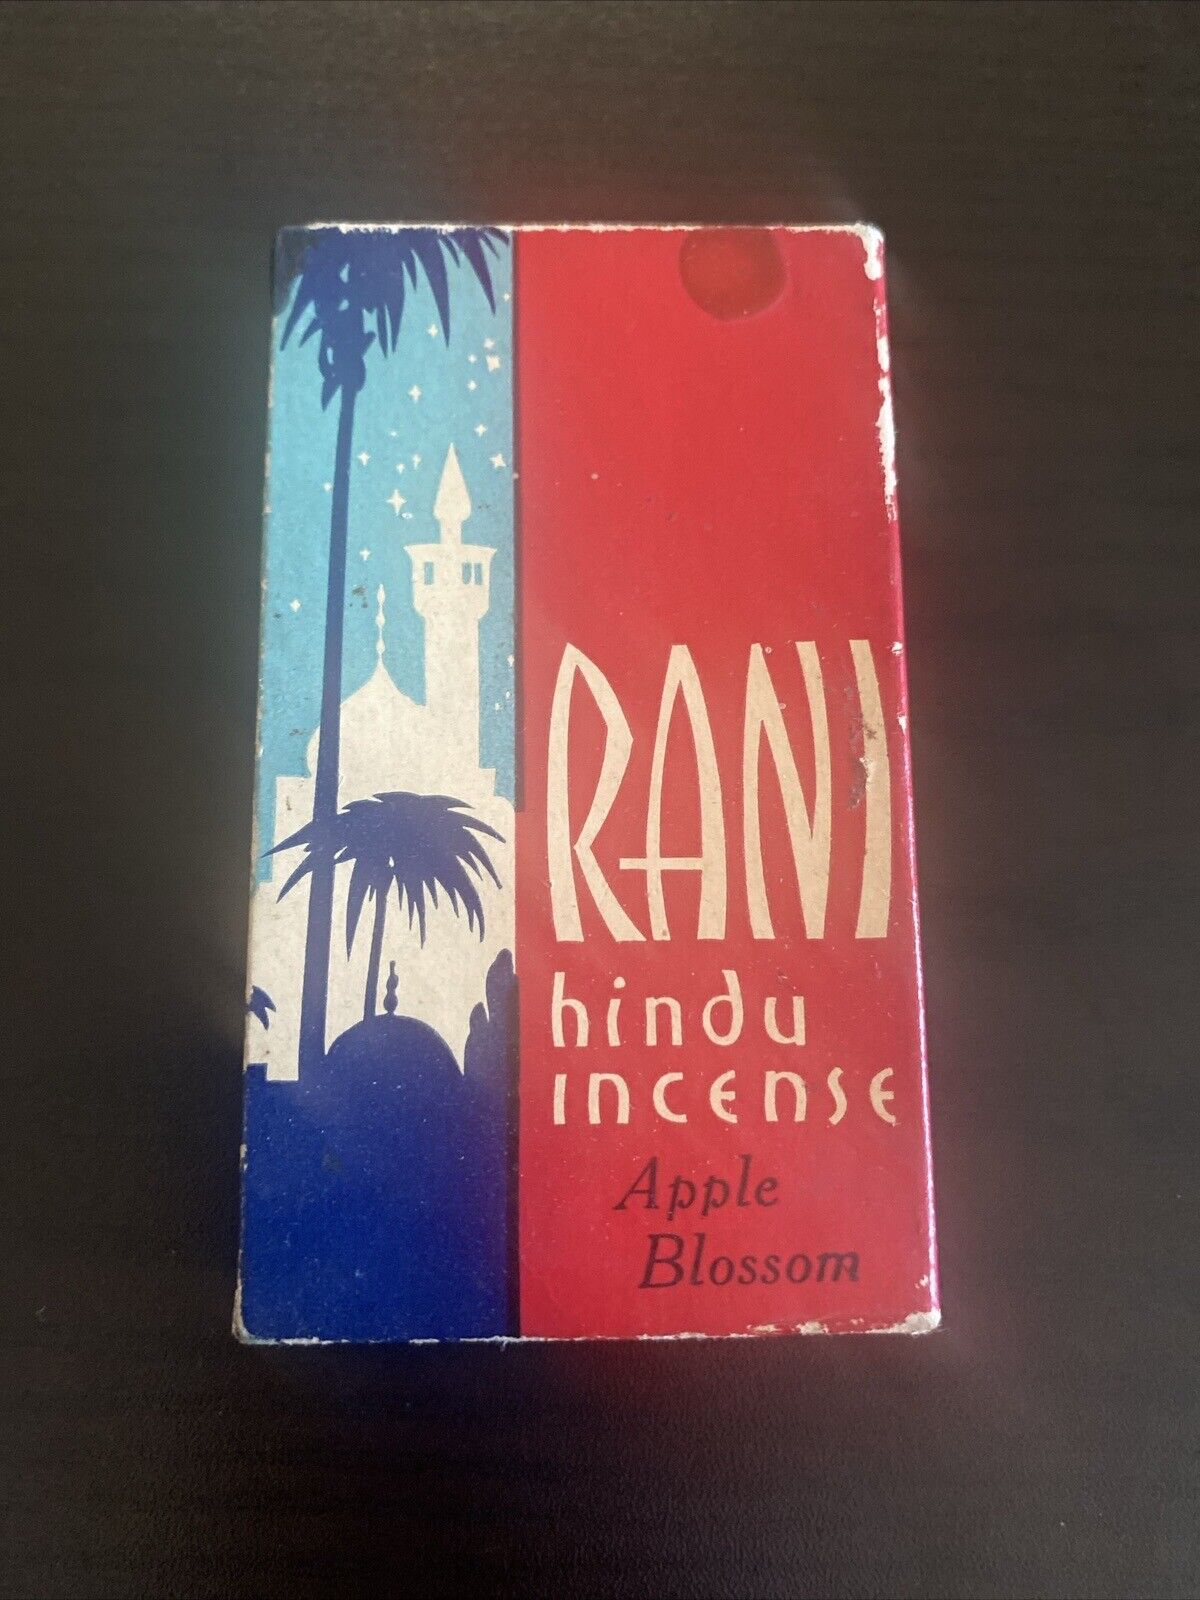 Vintage 1934 Rani Hindu Incense 6 Cones In Box Apple Blossom Chicago IL Illinois